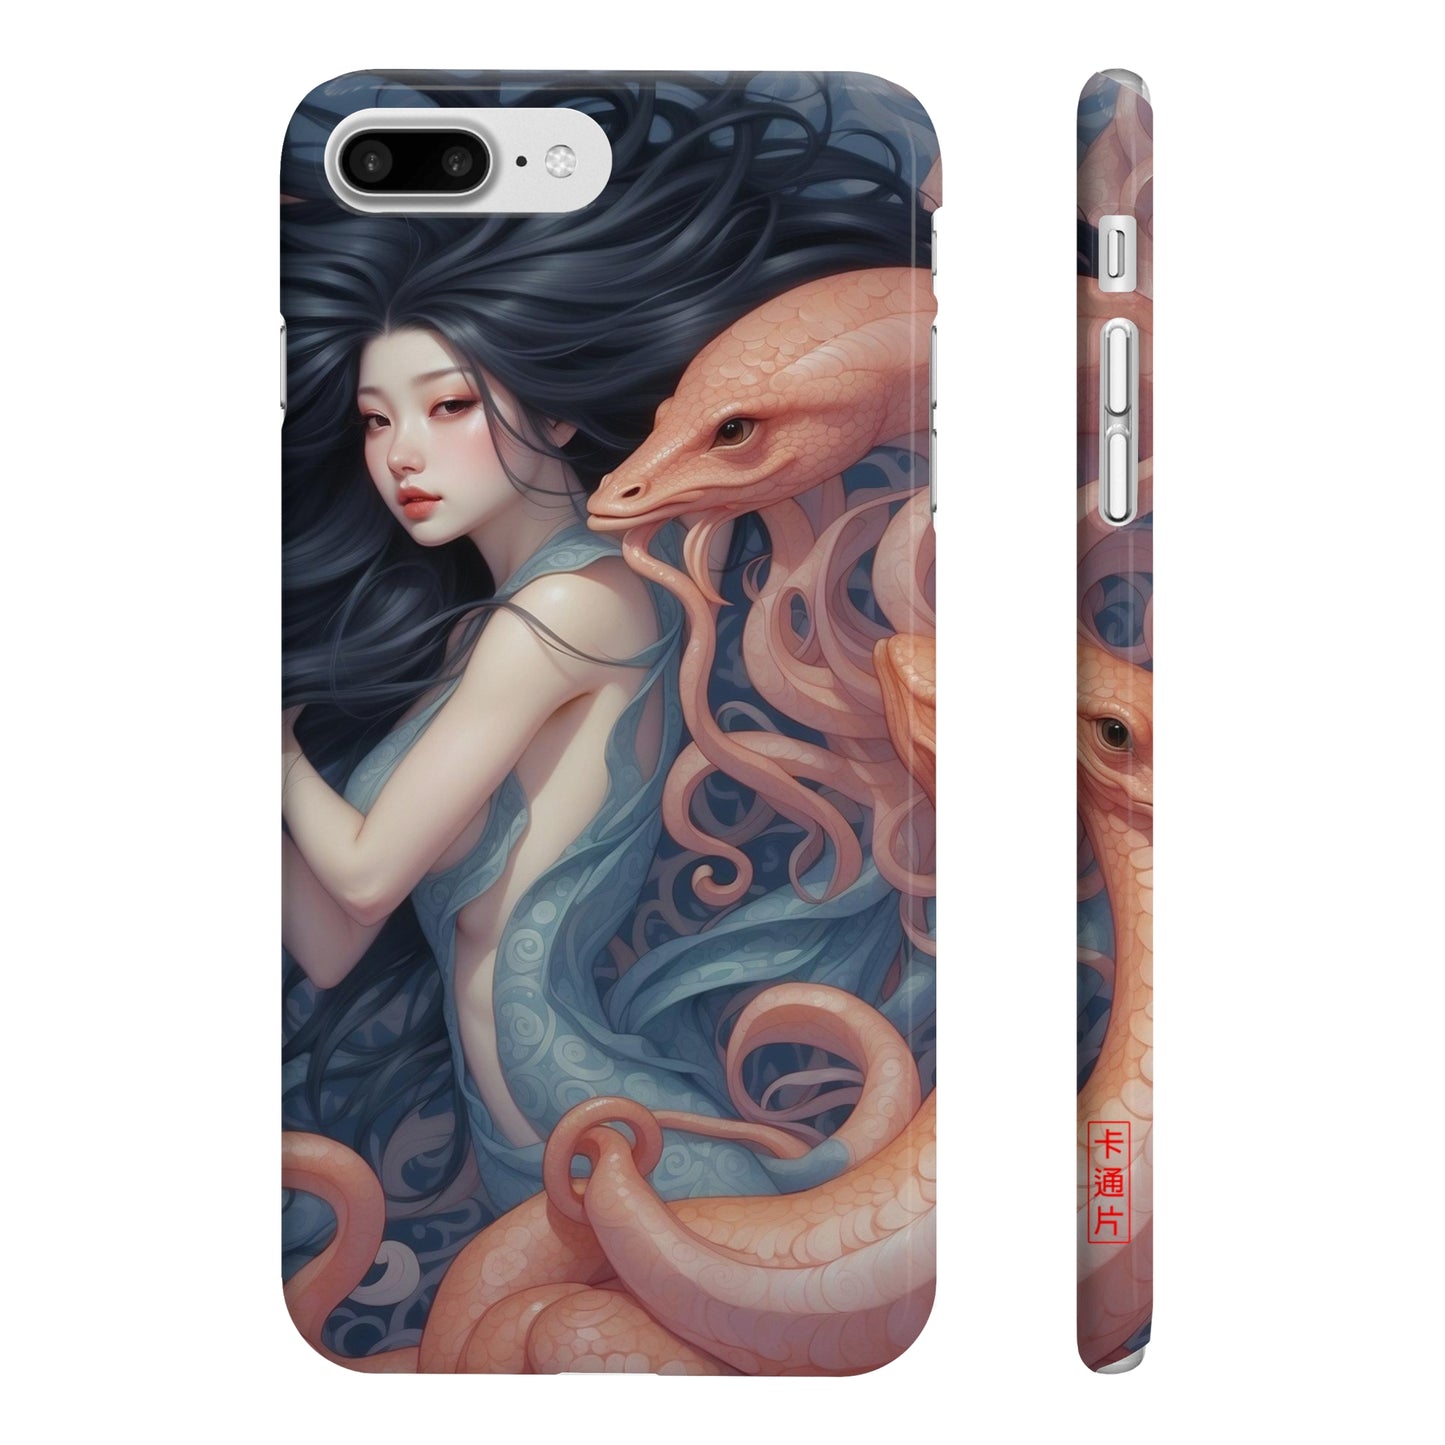 Kǎtōng Piàn - Mermaid Collection - 010 - Slim Phone Cases Printify